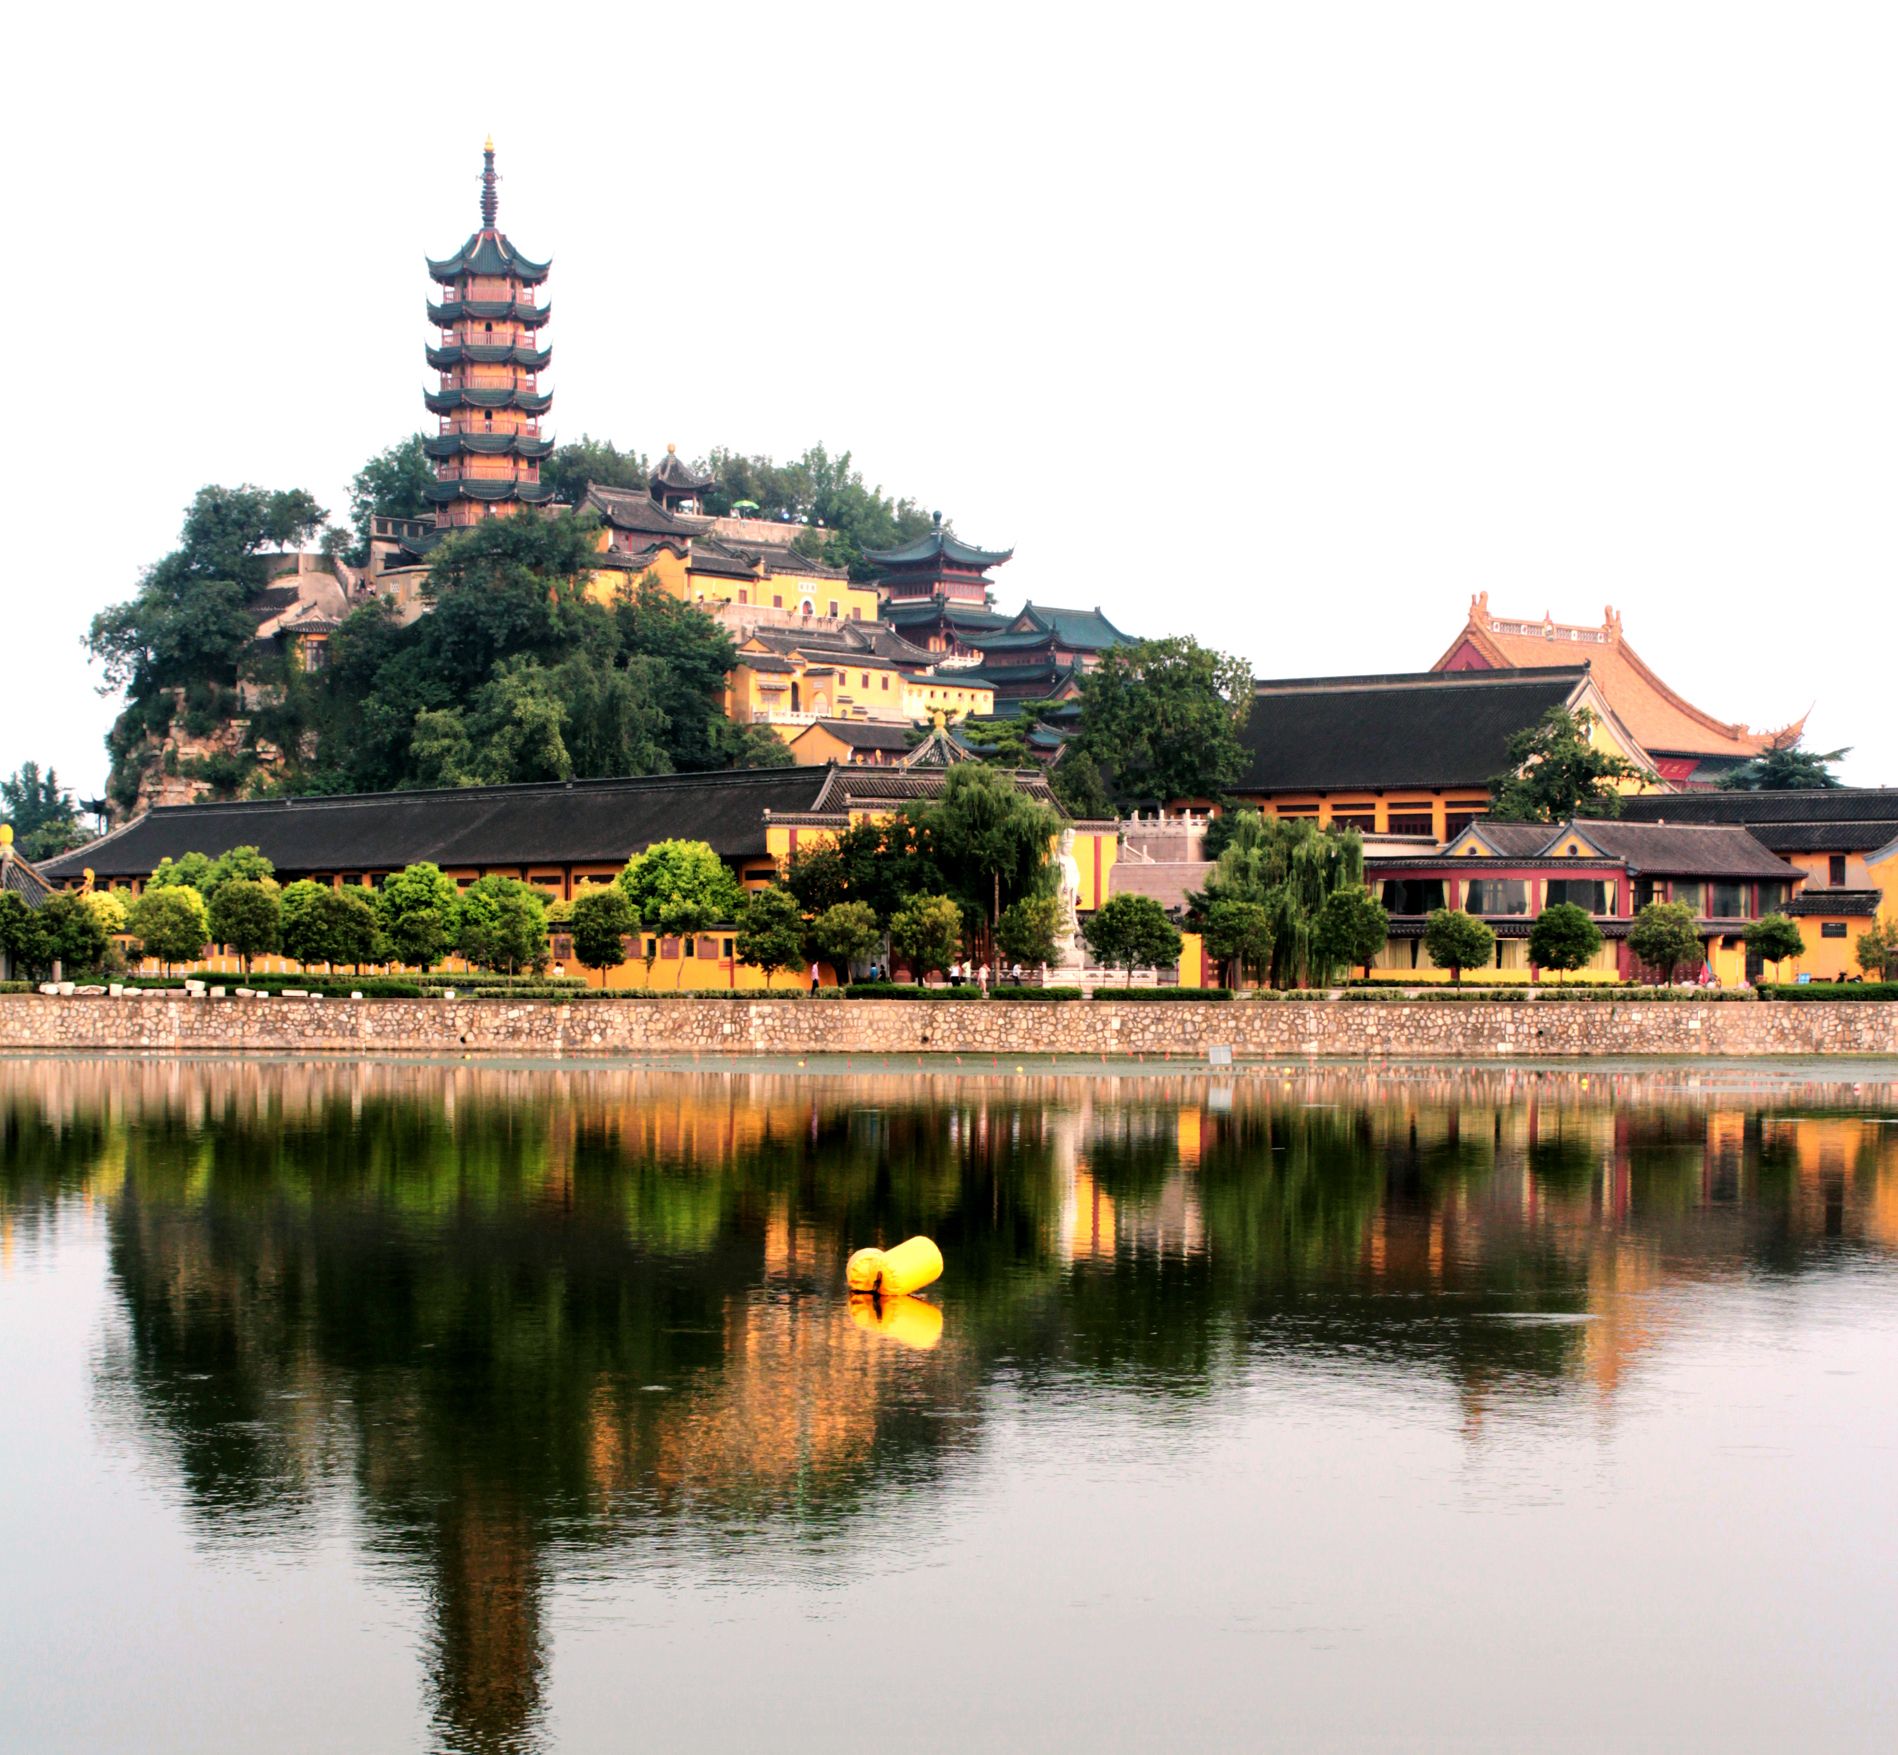 镇江最著名的旅游景点,佛教禅宗圣地,白蛇传水漫金山发生地!